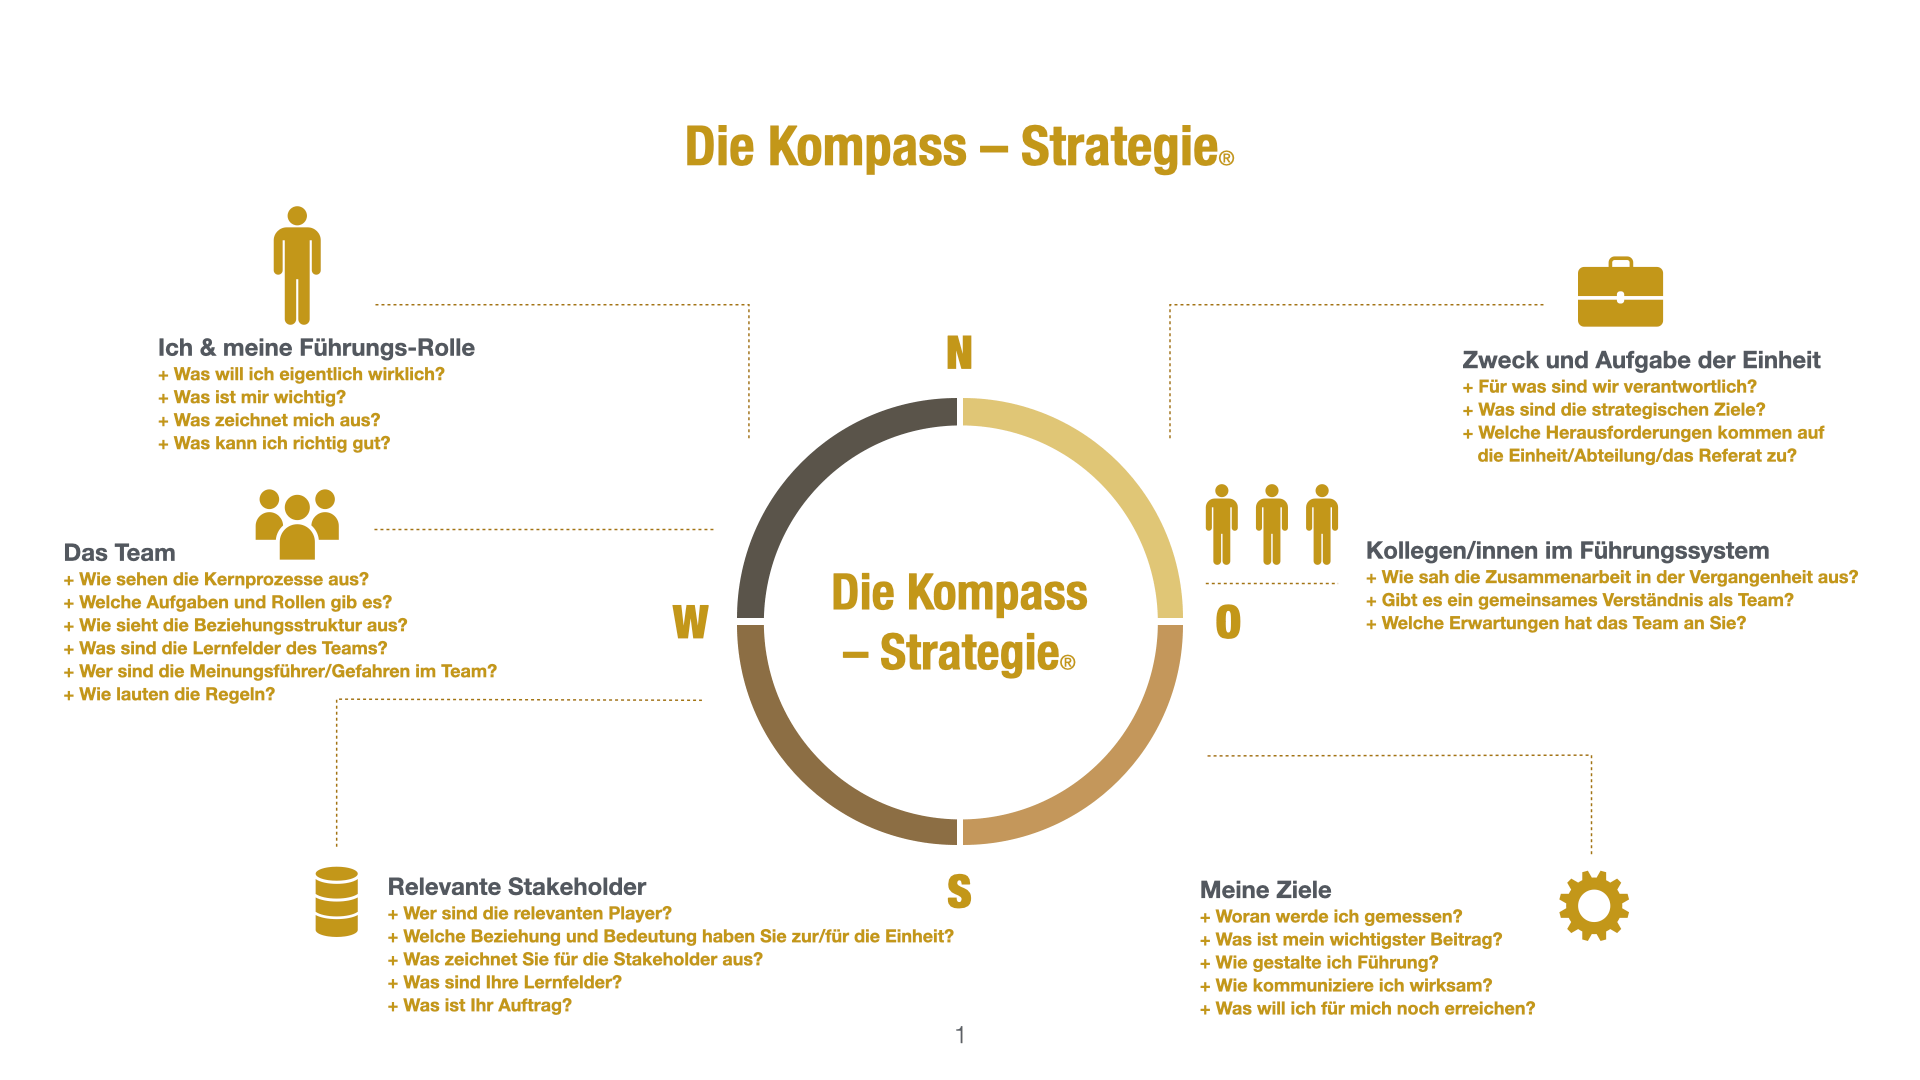 Die Kompass-Strategie, Ich und meine Führungsrolle, Das Team, Stakeholder, meine Ziele, Kolleg/innen im Führungssystem, Einheit